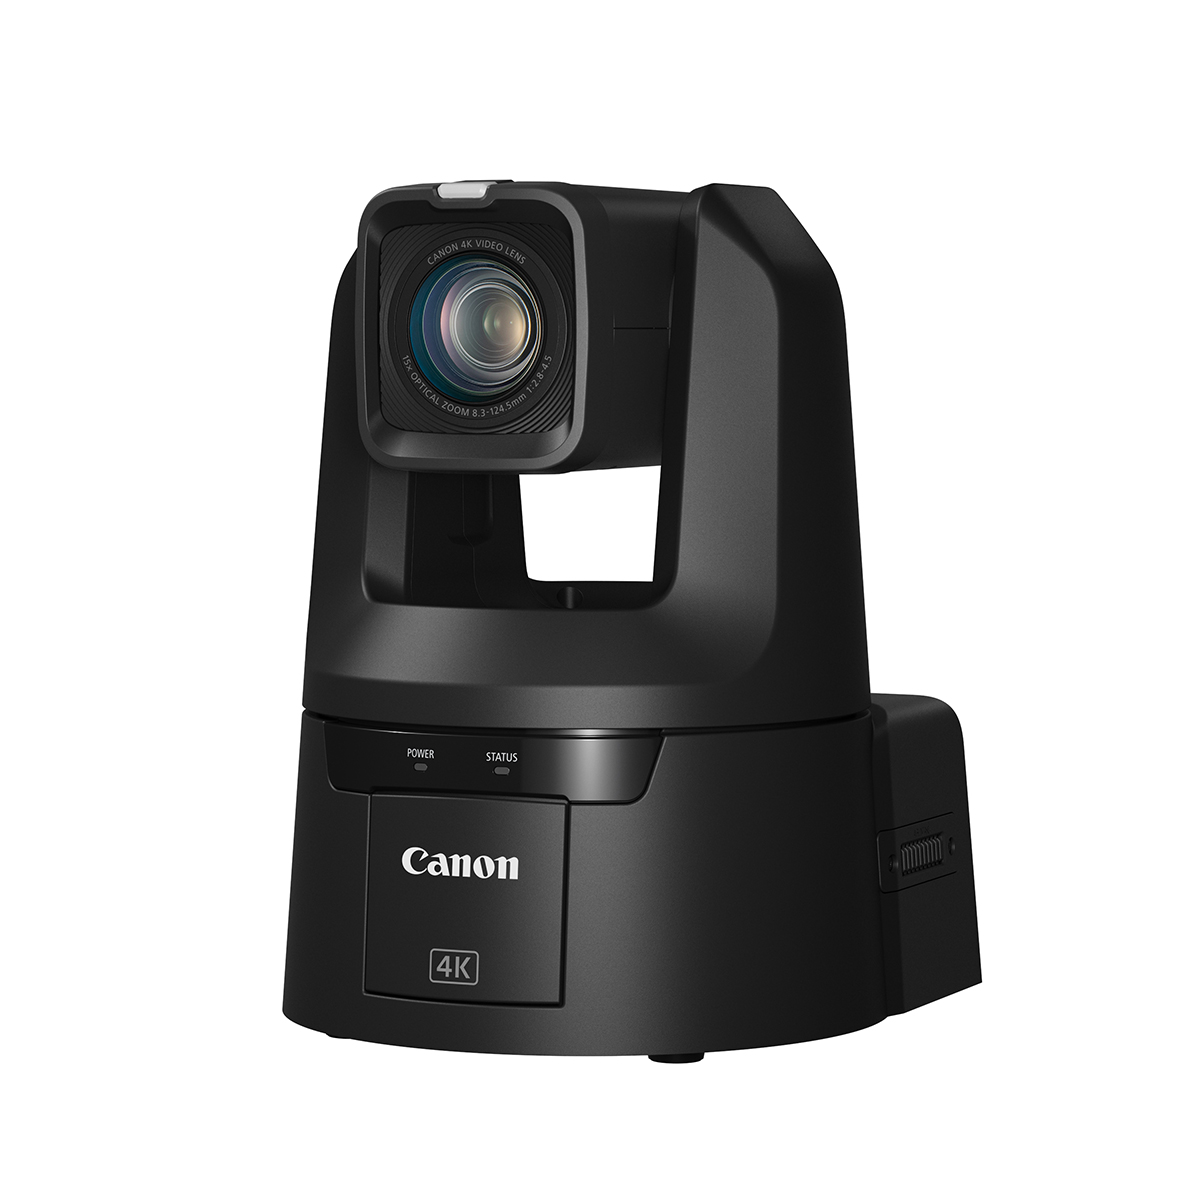 CR N700 remote camera